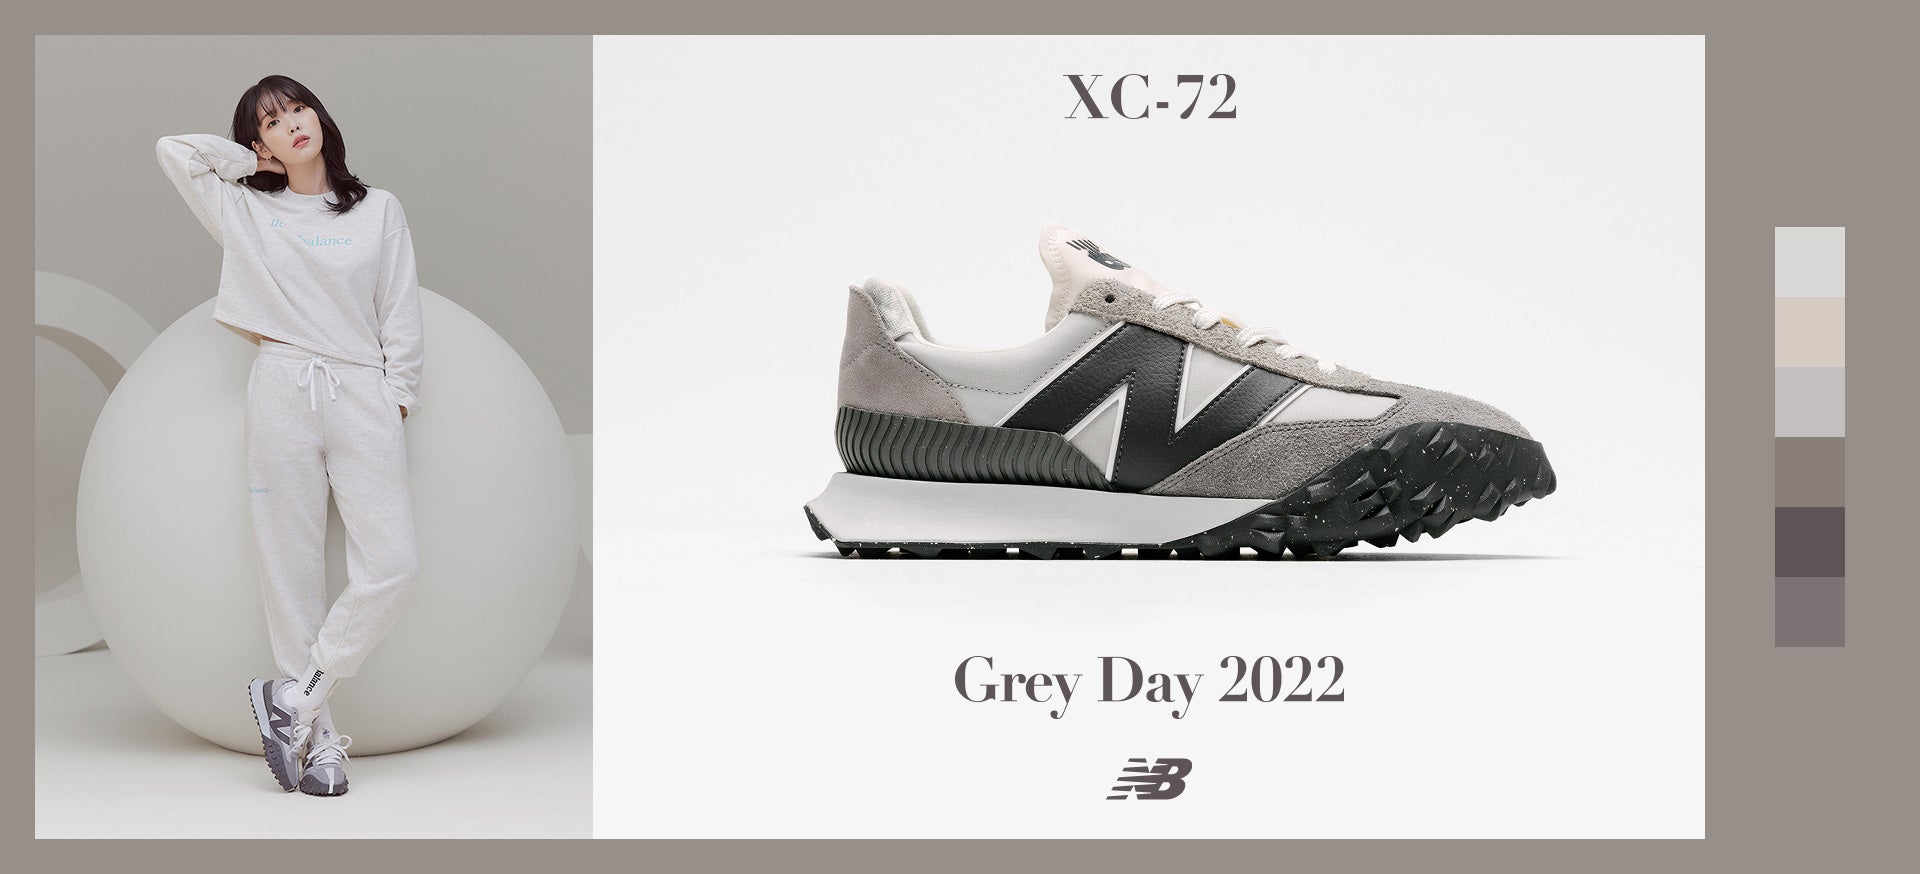 XC-72, Grey Day 2022